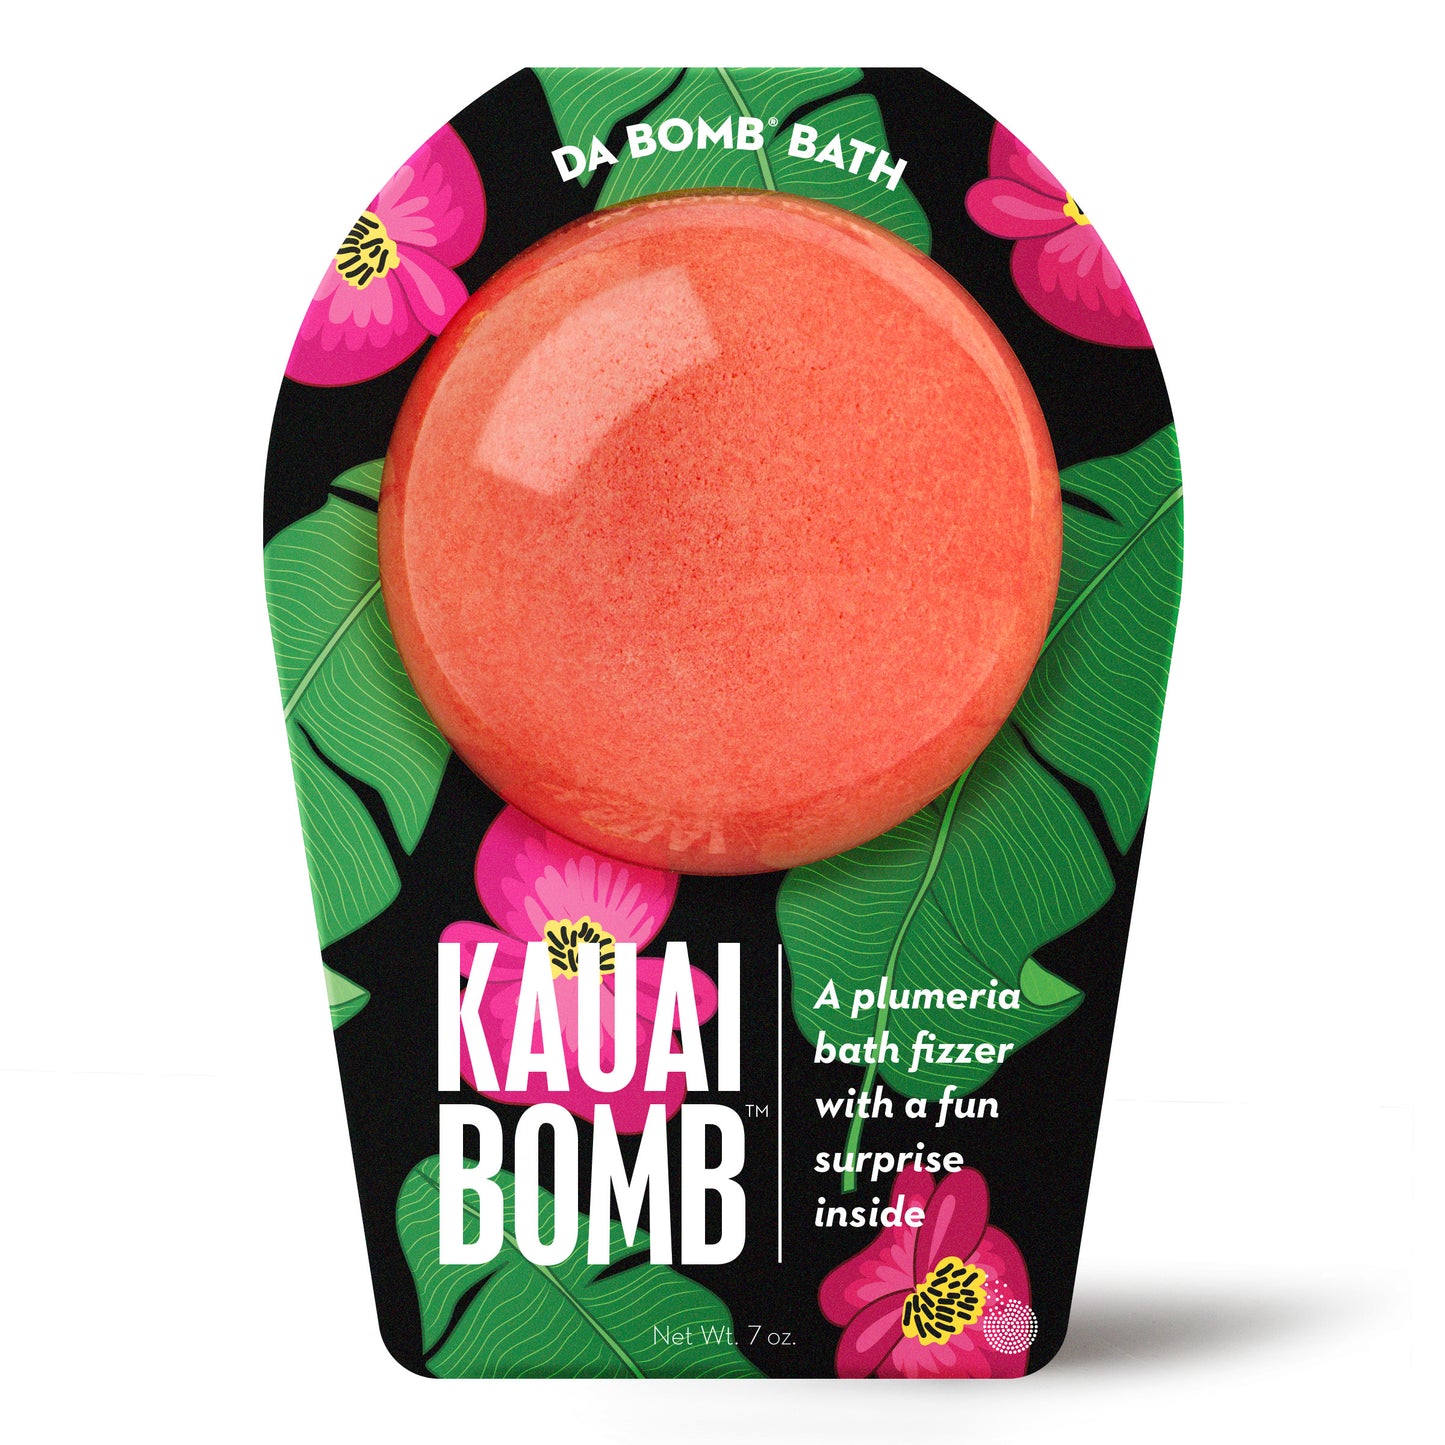 Kauai Bomb™